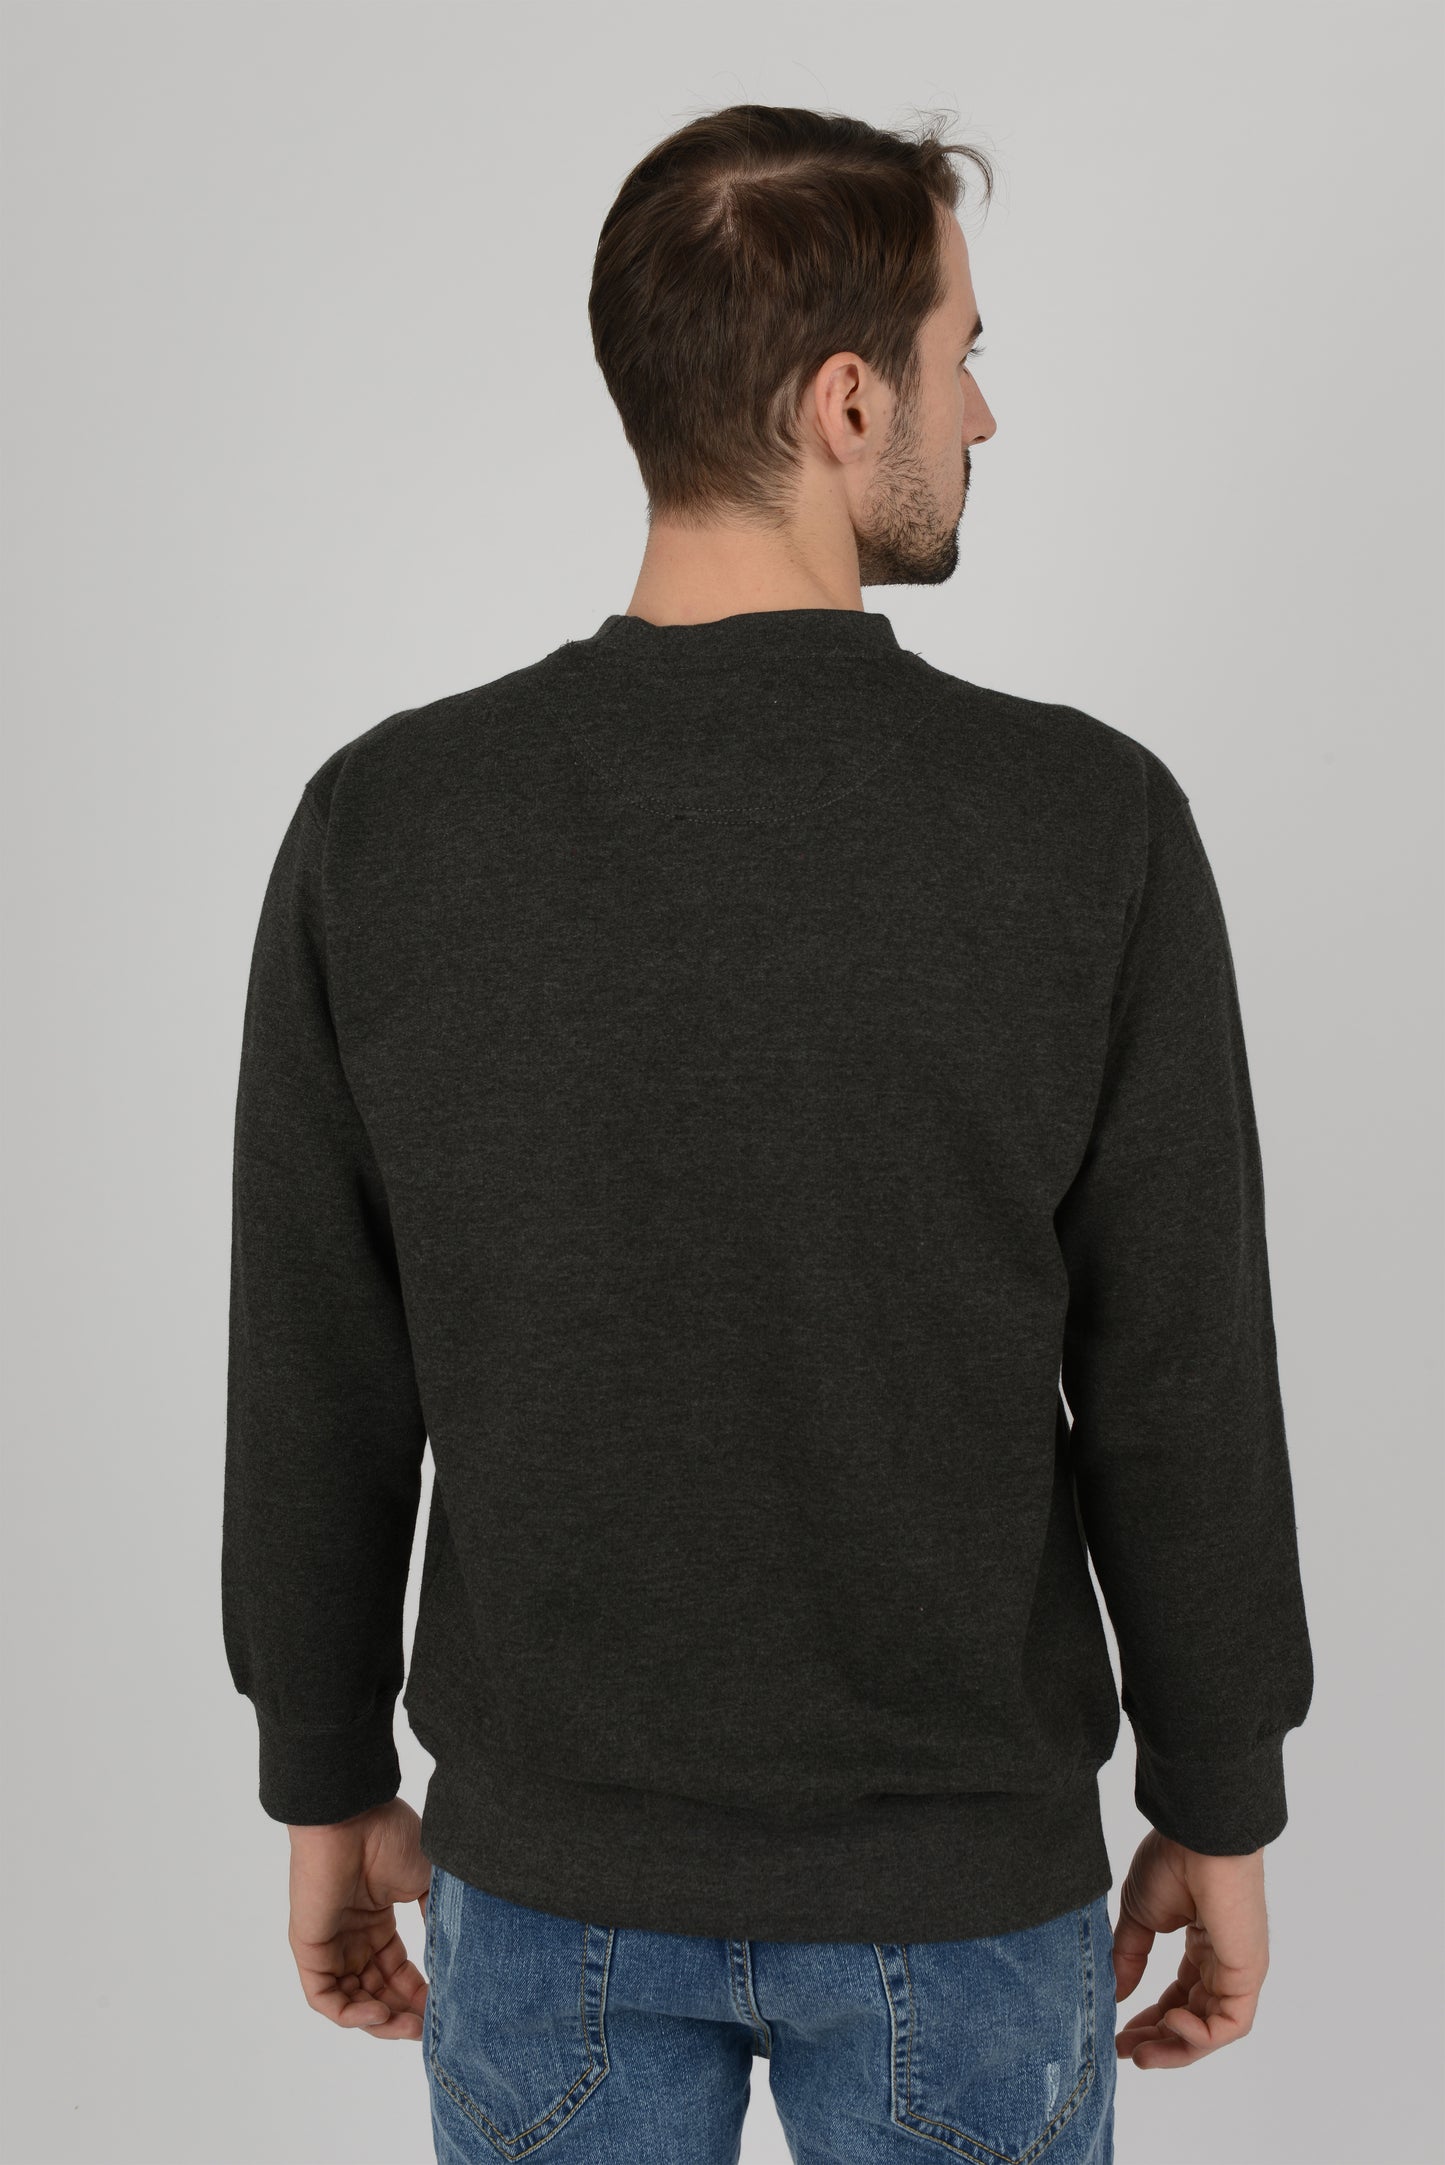 Mens-Plain-Fleece-Sweatshirt-Sweater-Dark-Grey